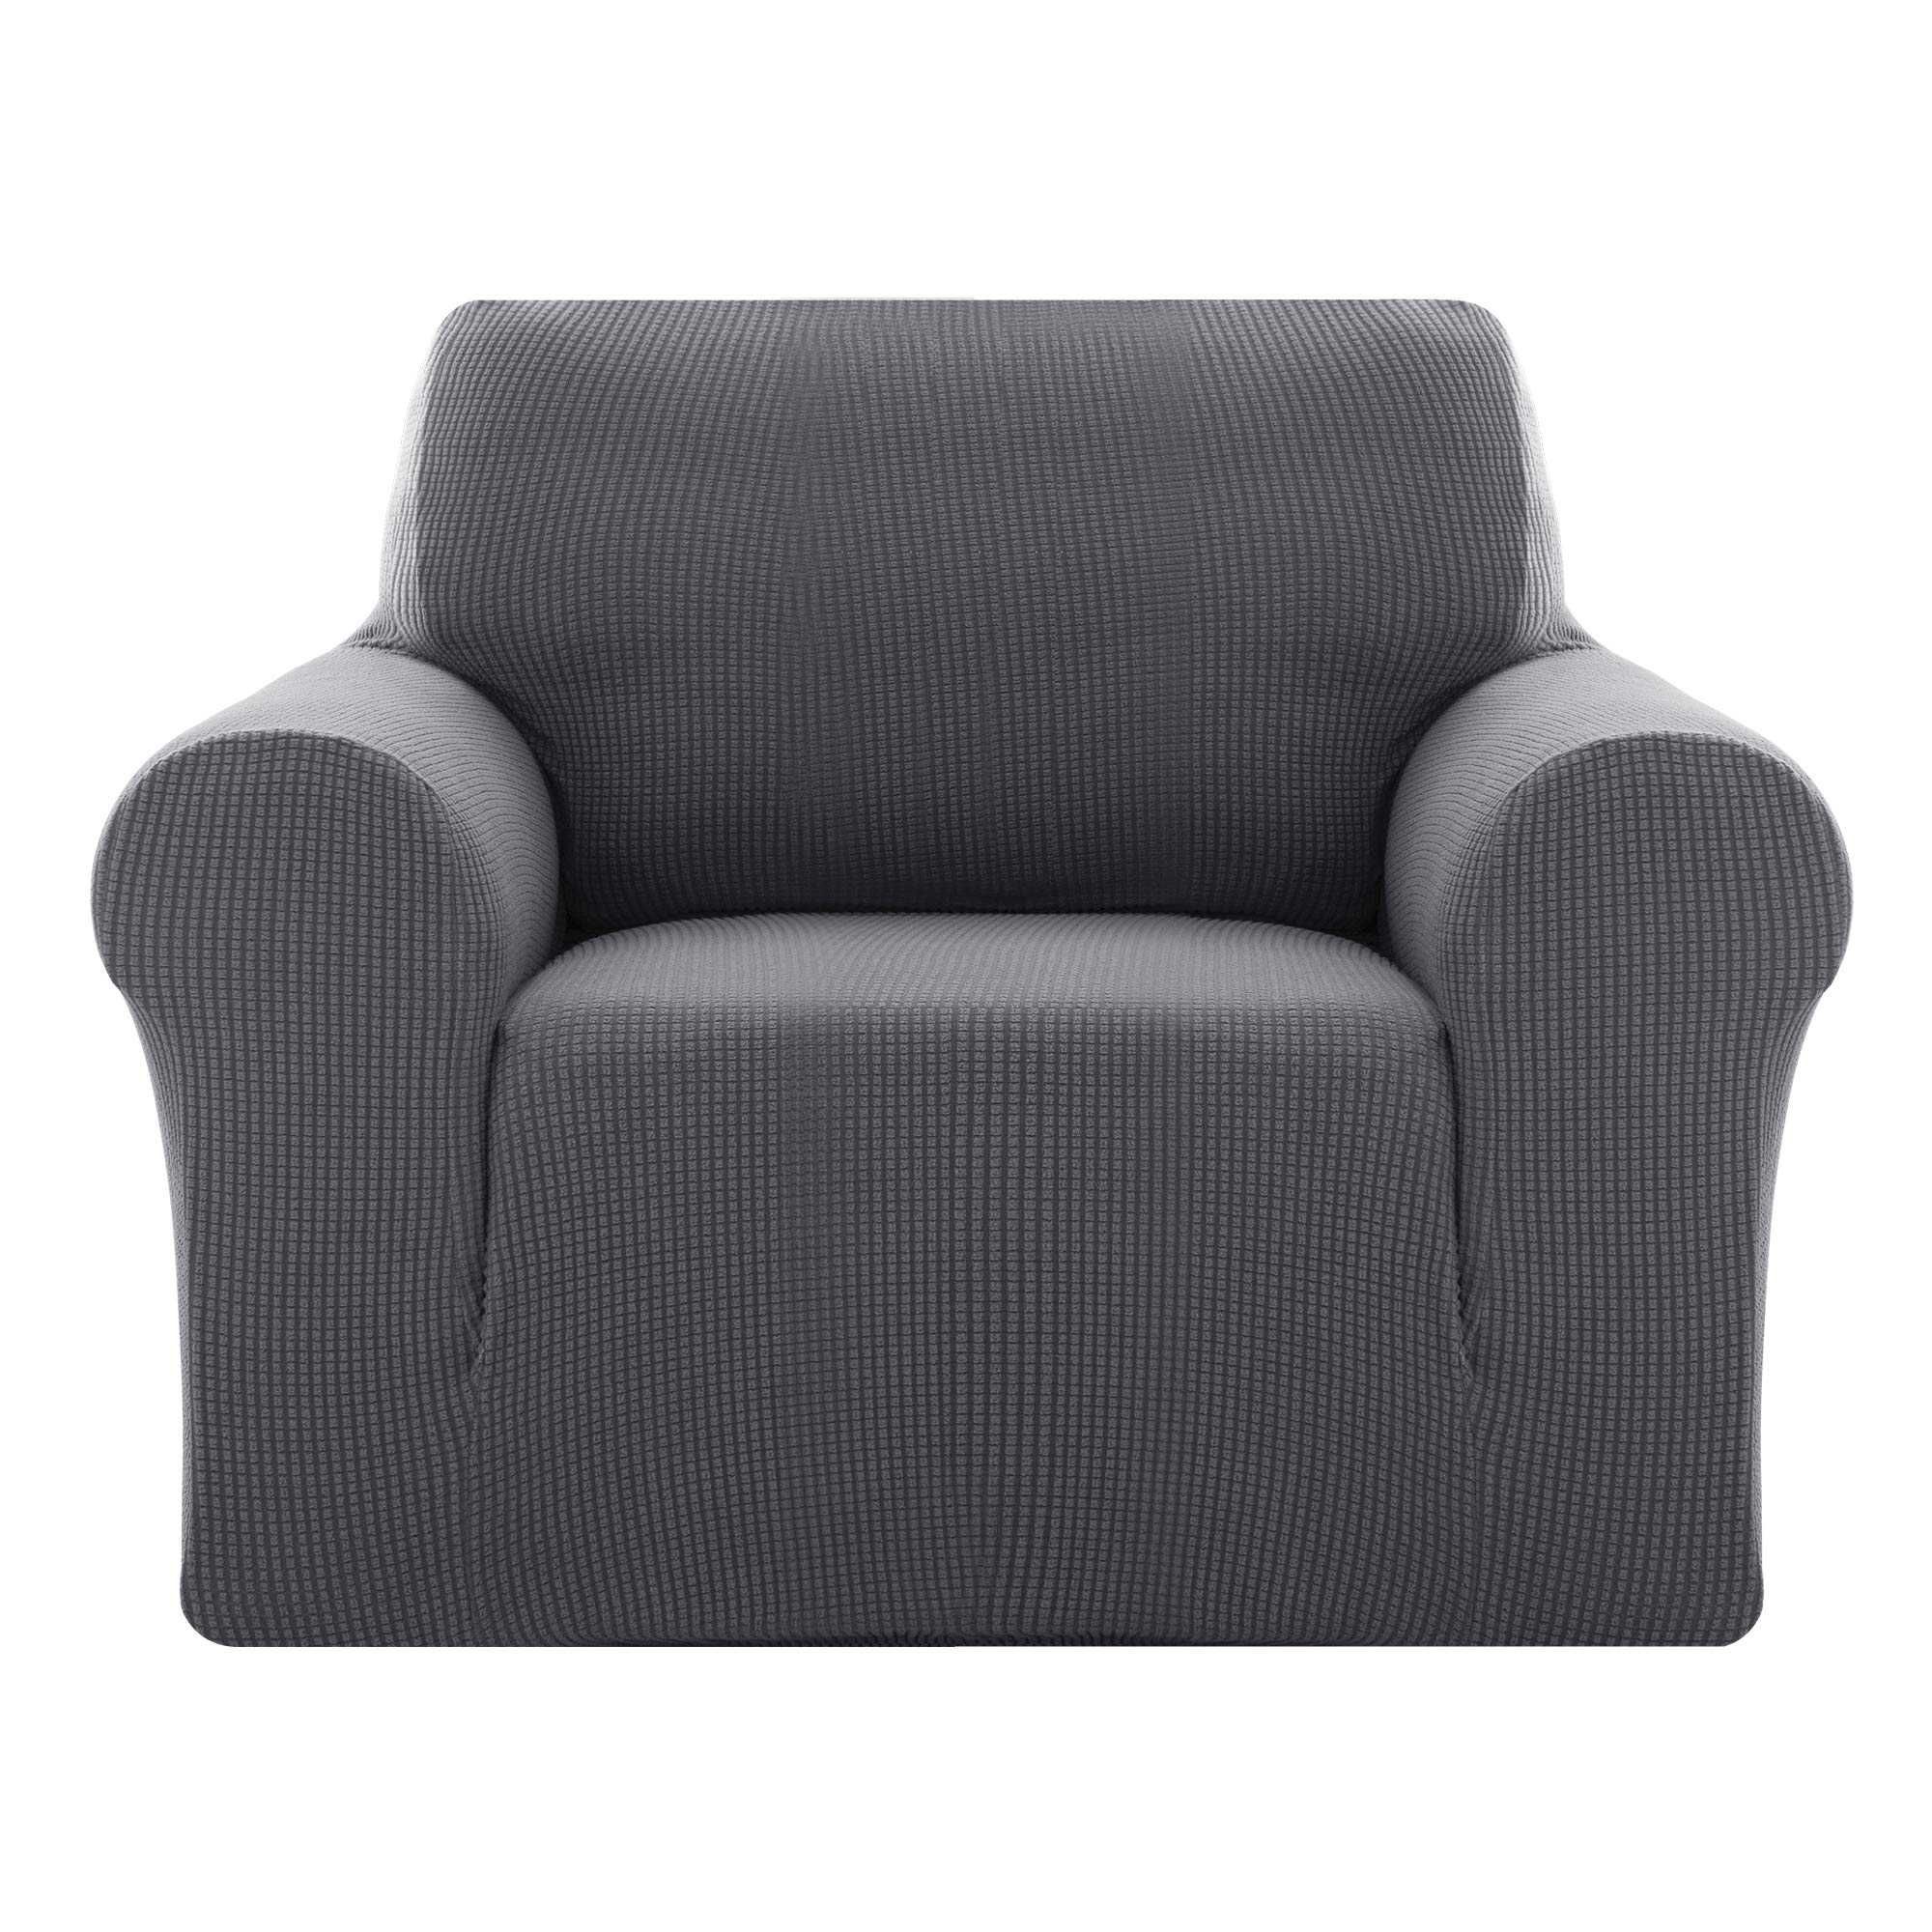 Nowy elastyczny pokrowiec/narzuta/ochraniacz/sofa/fotel/80-120 !7153!